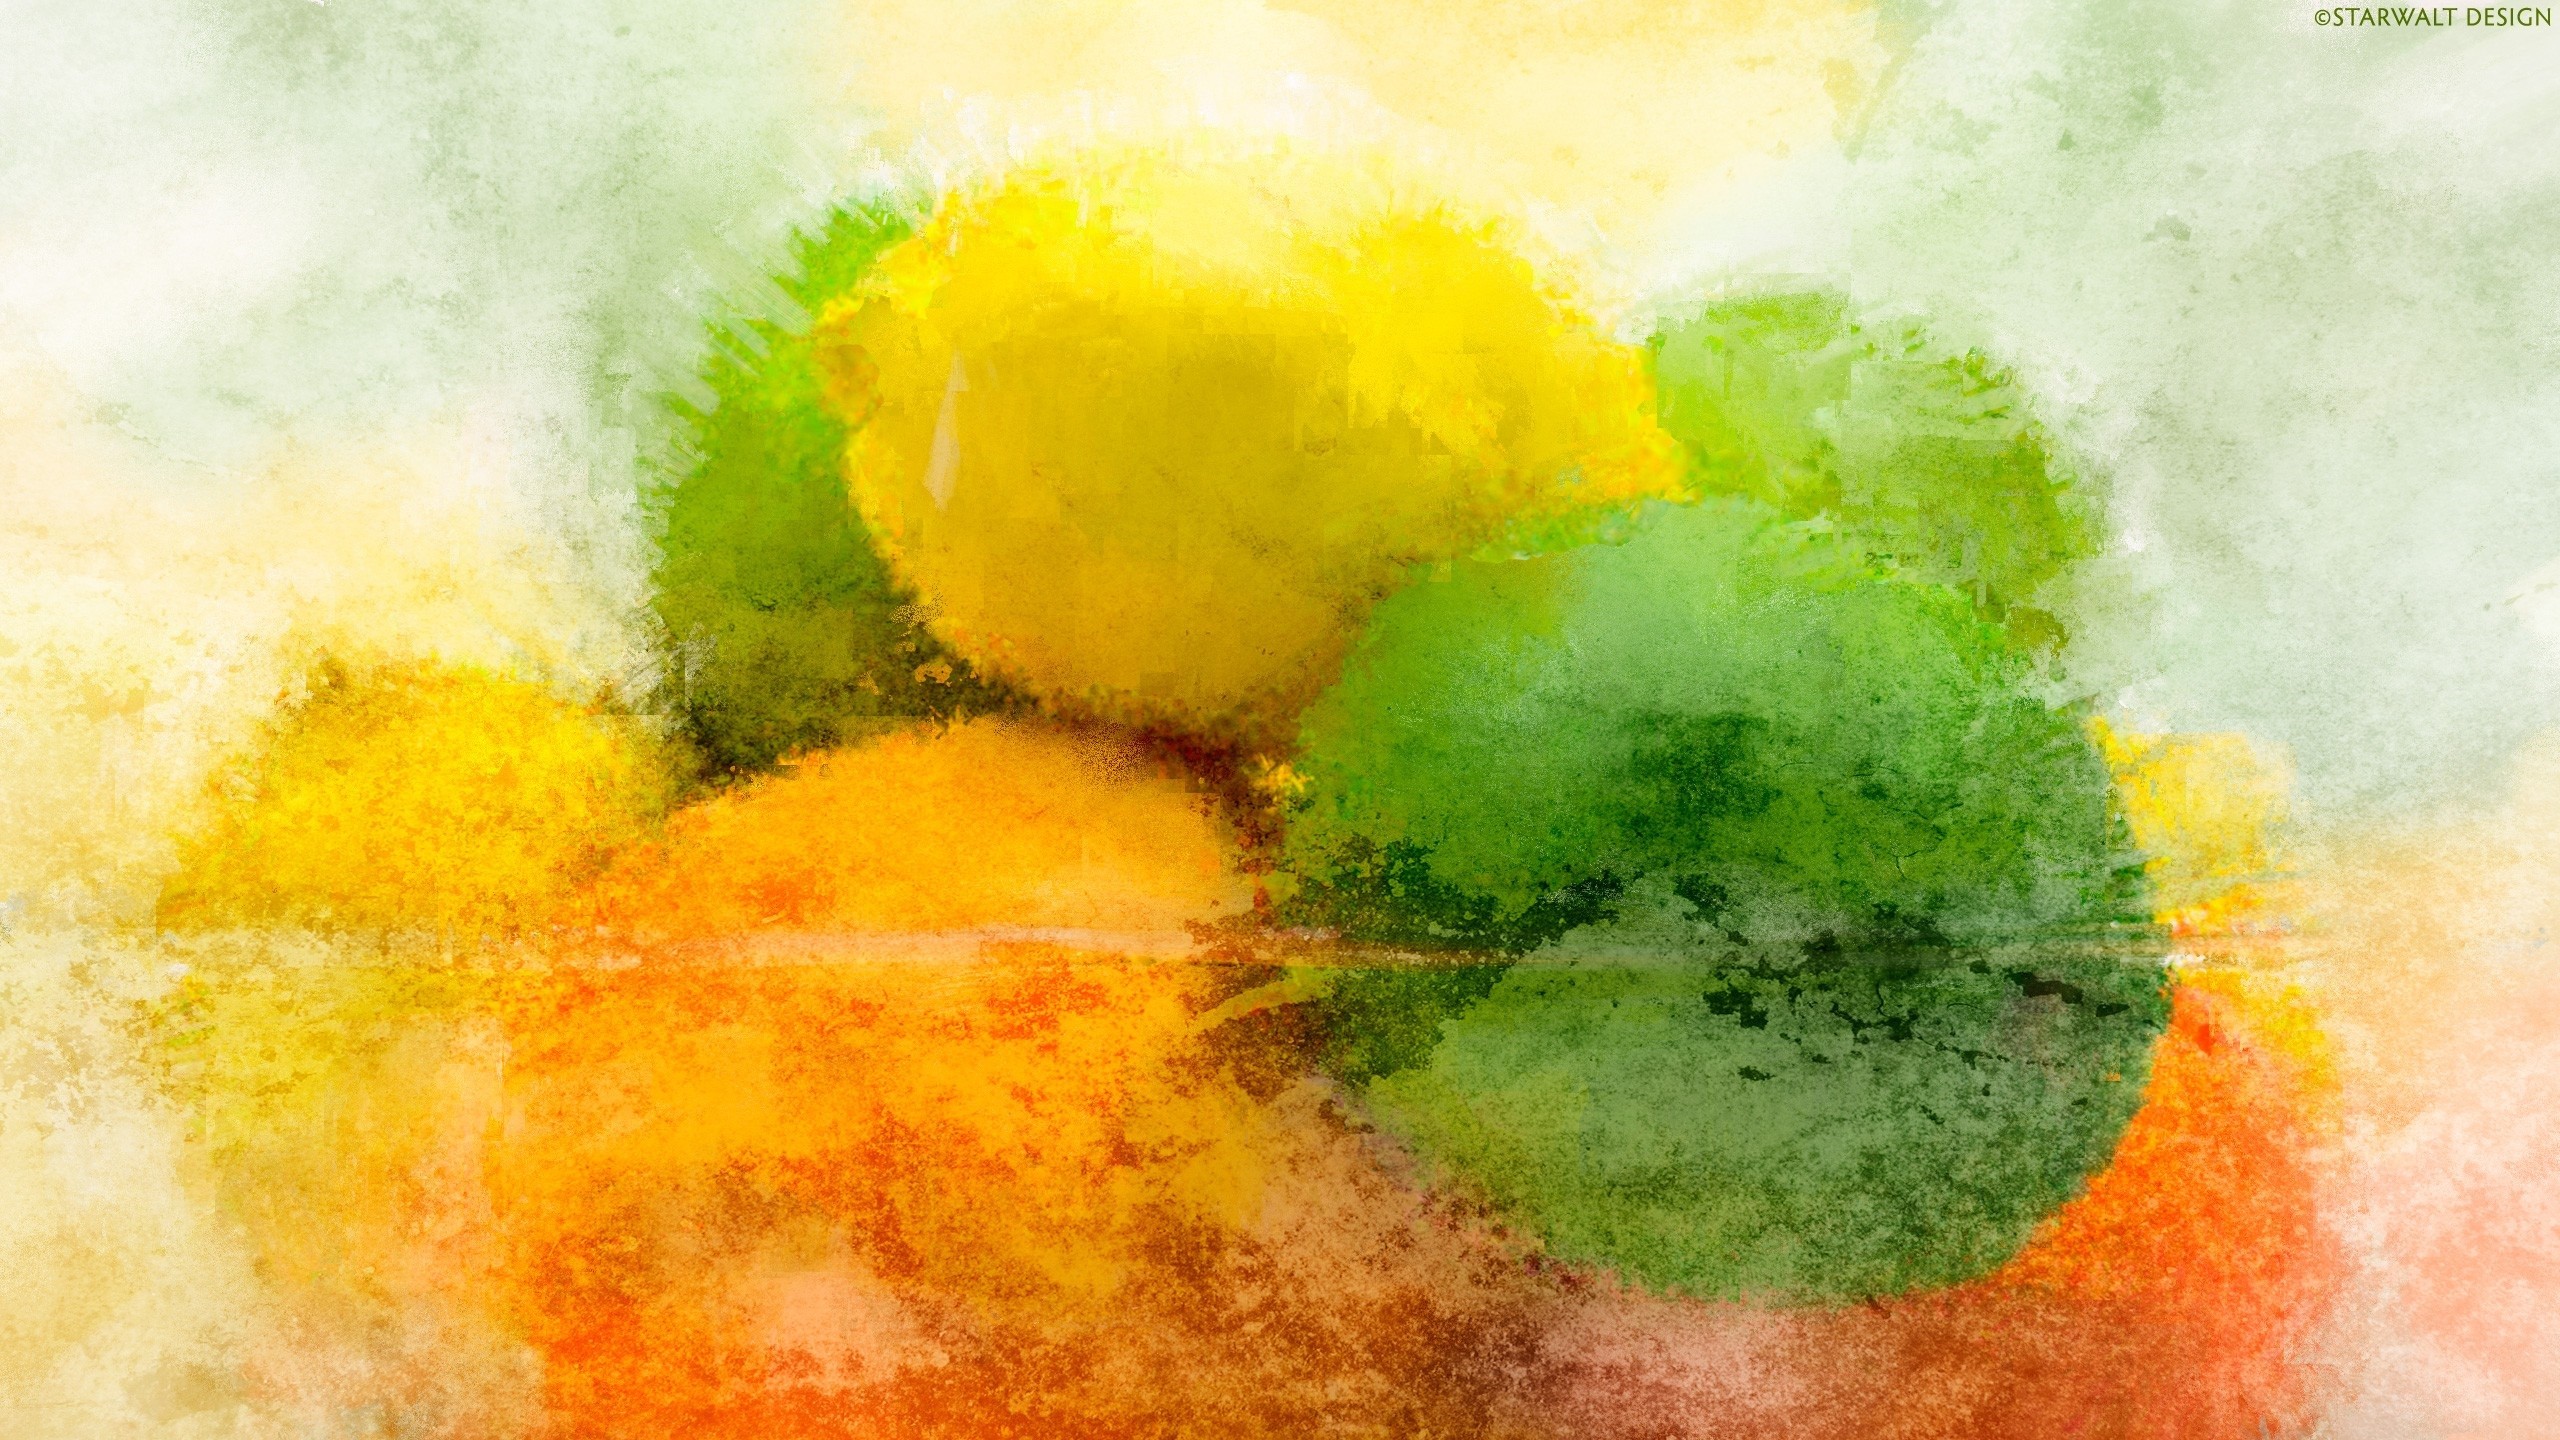 Abstract Lemons Yellow Orange Green Limes Orange Fruit Grunge 2560x1440